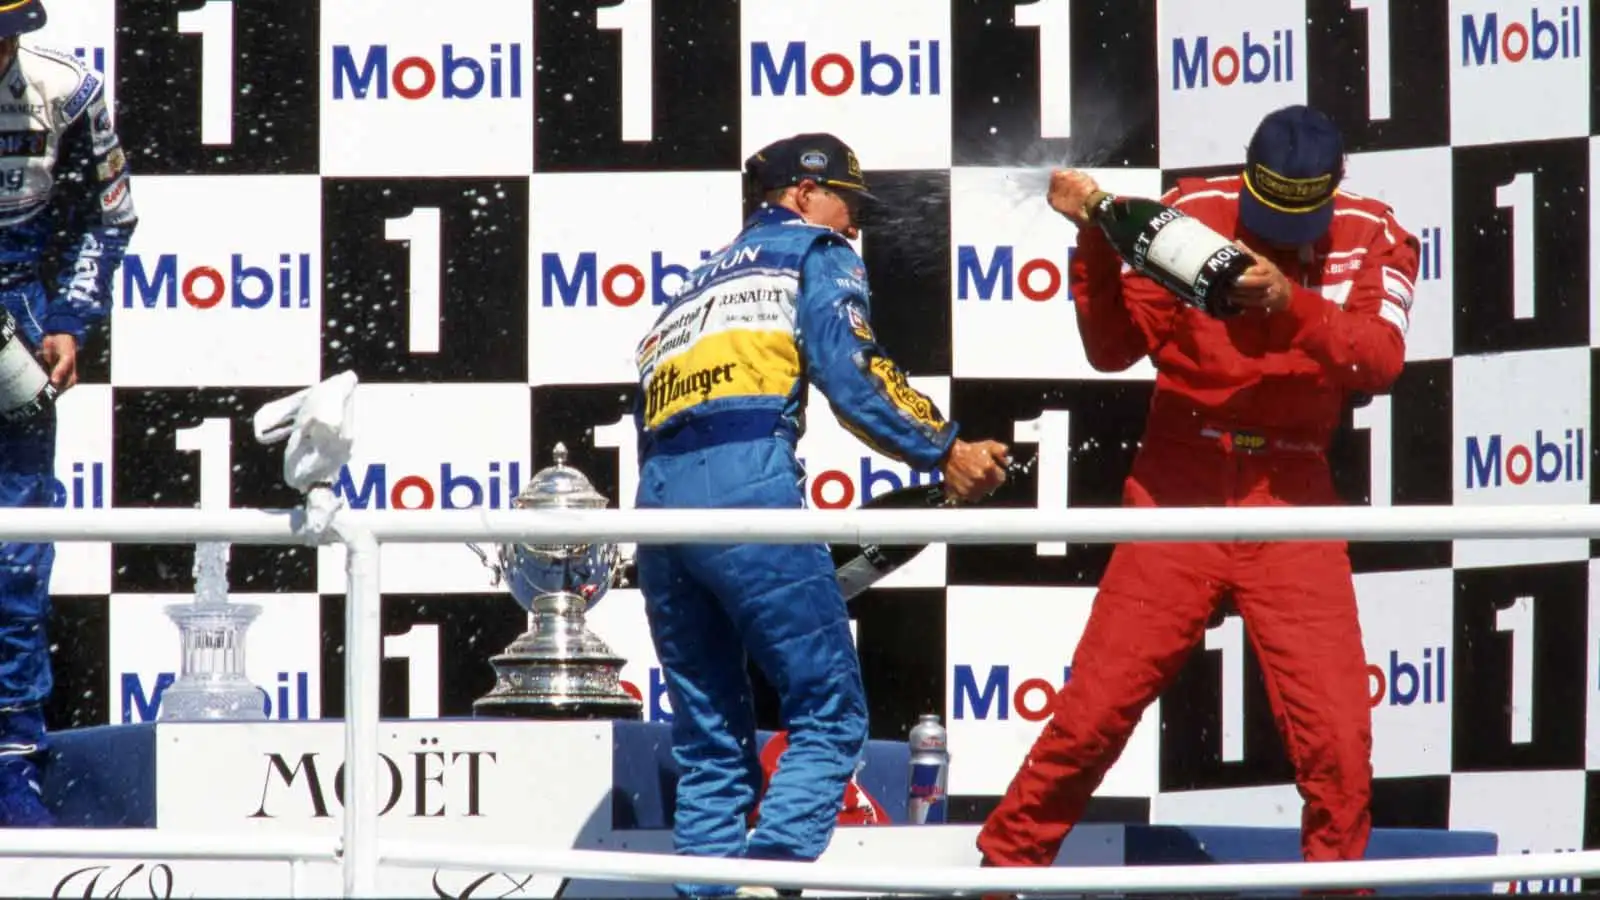 Michael Schumacher sprays champagne. 1995 German GP Hockenheim.